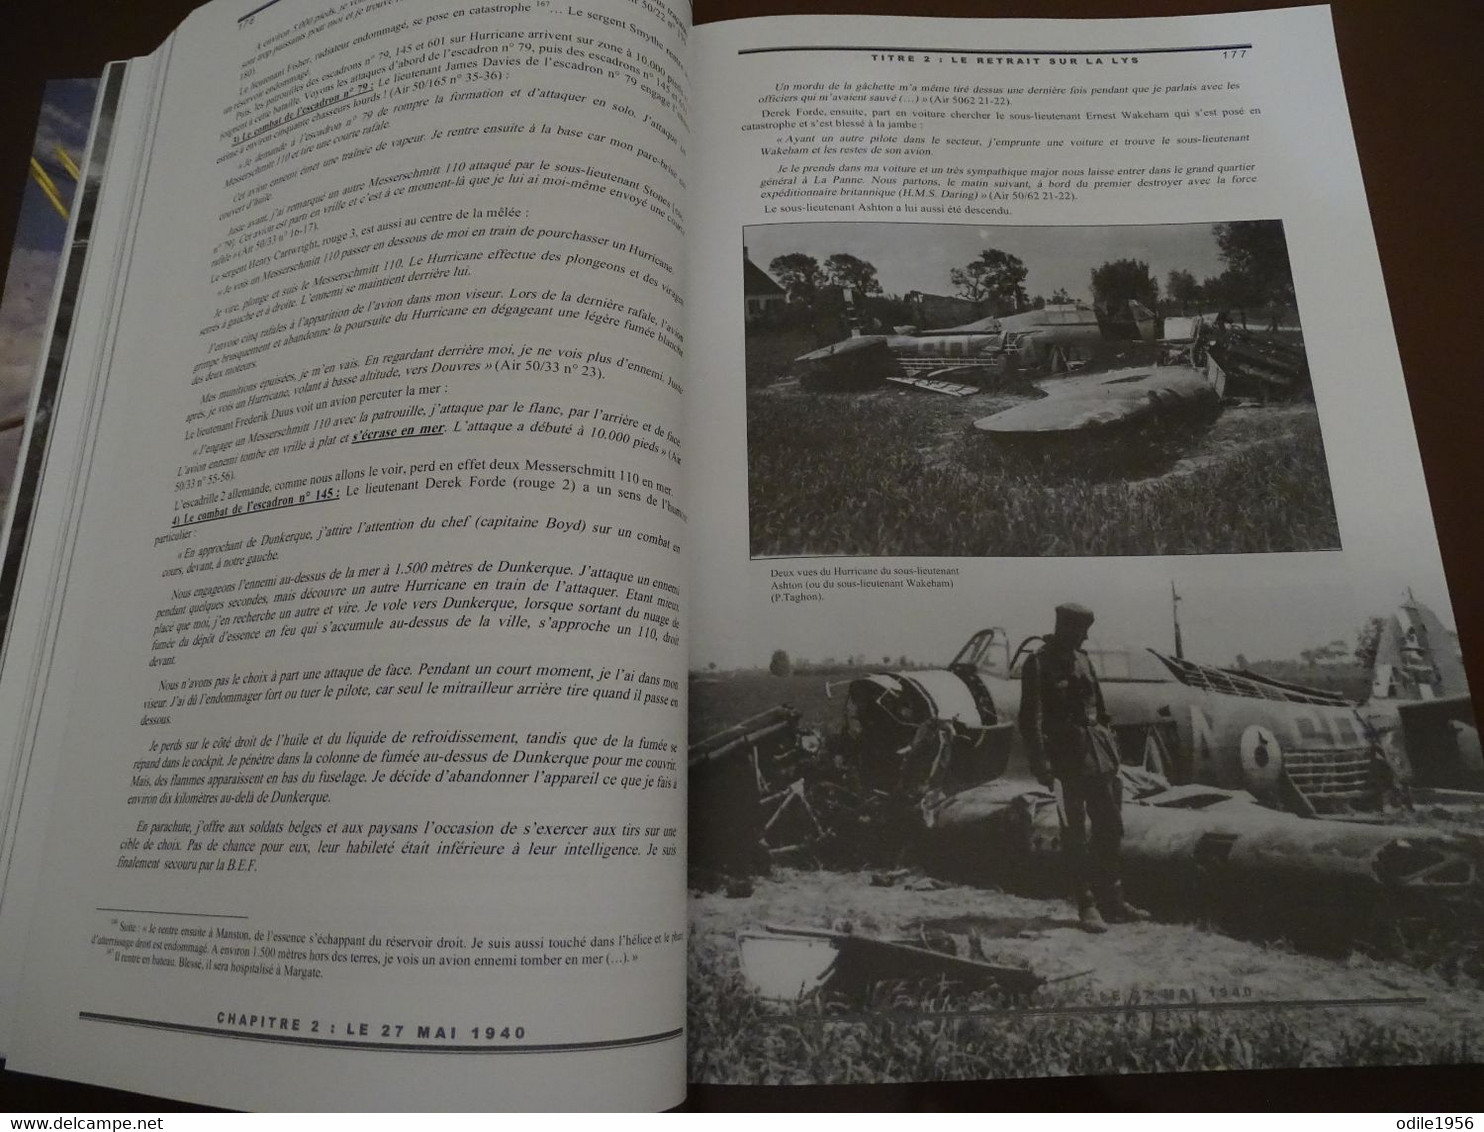 Les victoires de l'aviation de chasse britannique 24 mai 1940 - 4 juin 1940